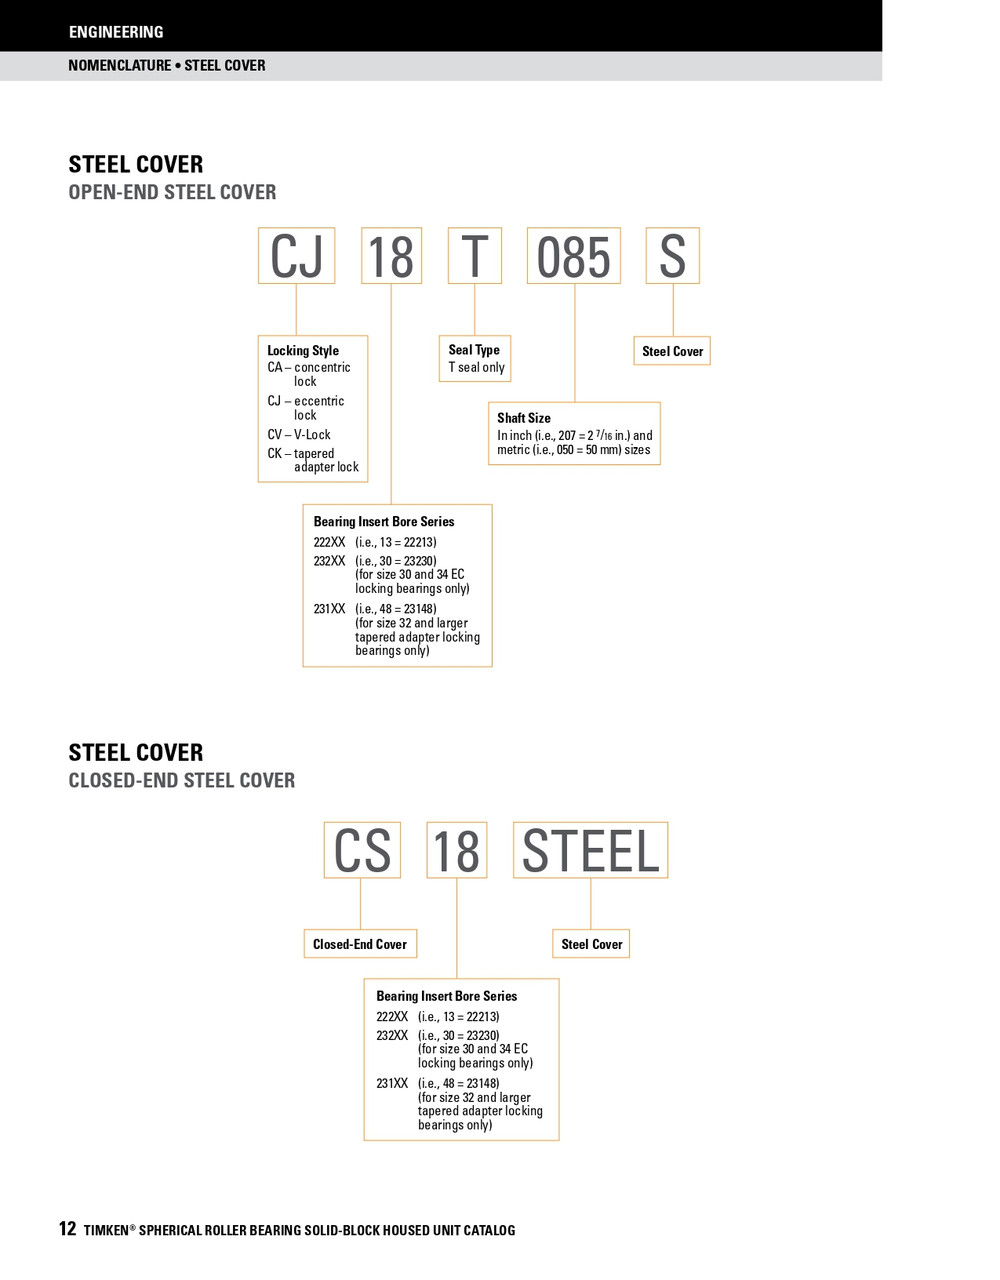 13-7/16" Timken SRB Steel Open End Cover w/Teflon Seal - TA/DV Taper Lock Bushing Type  CK72T1307S